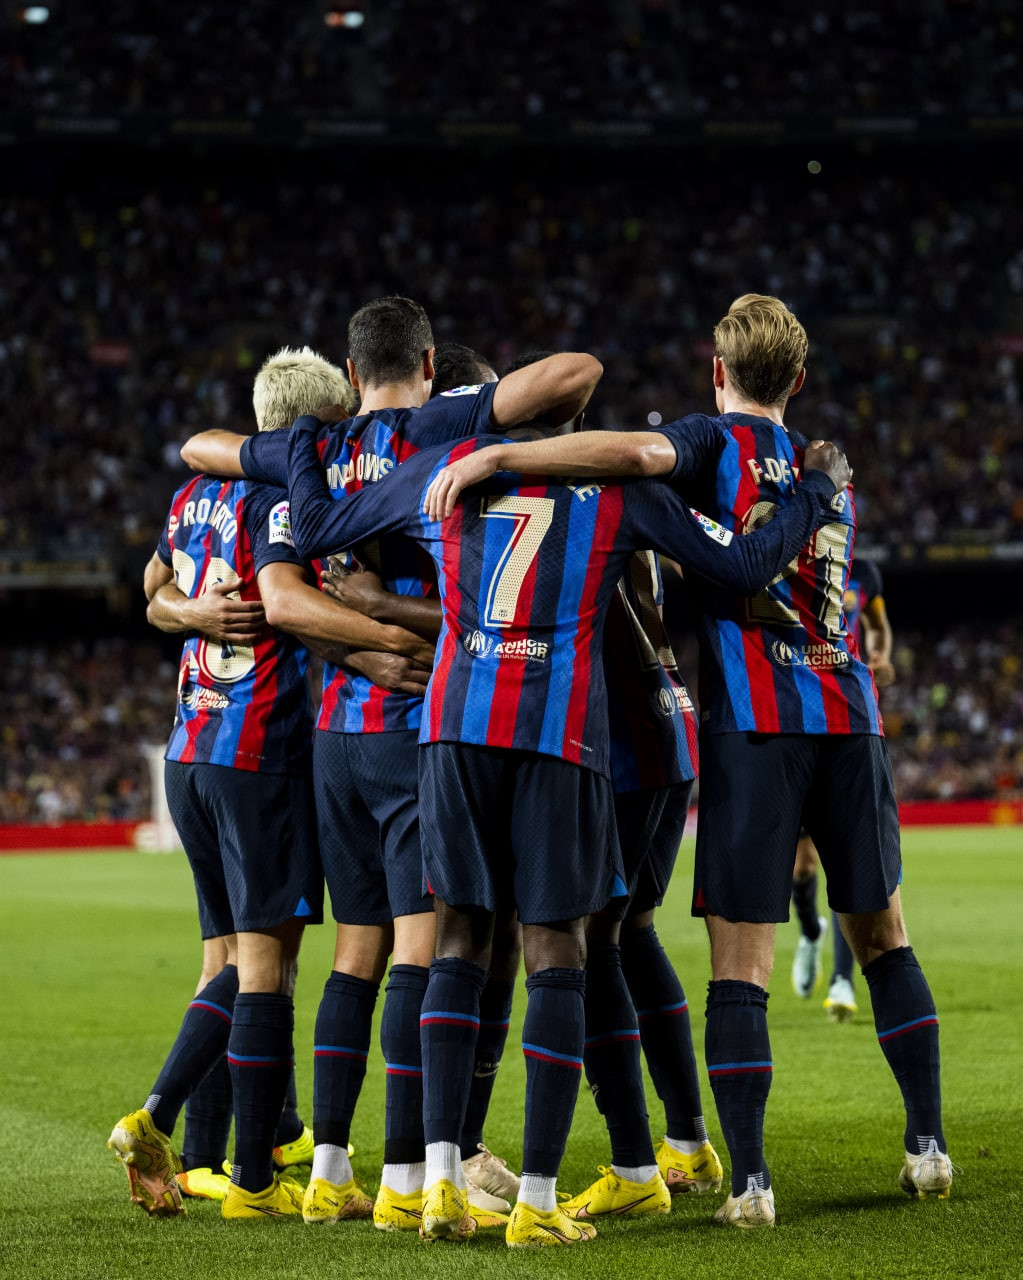 Cuối trận, Sergi Roberto kịp điền tên mình lên bảng tỷ số để mang về chiến thắng 4-0 cho Barca